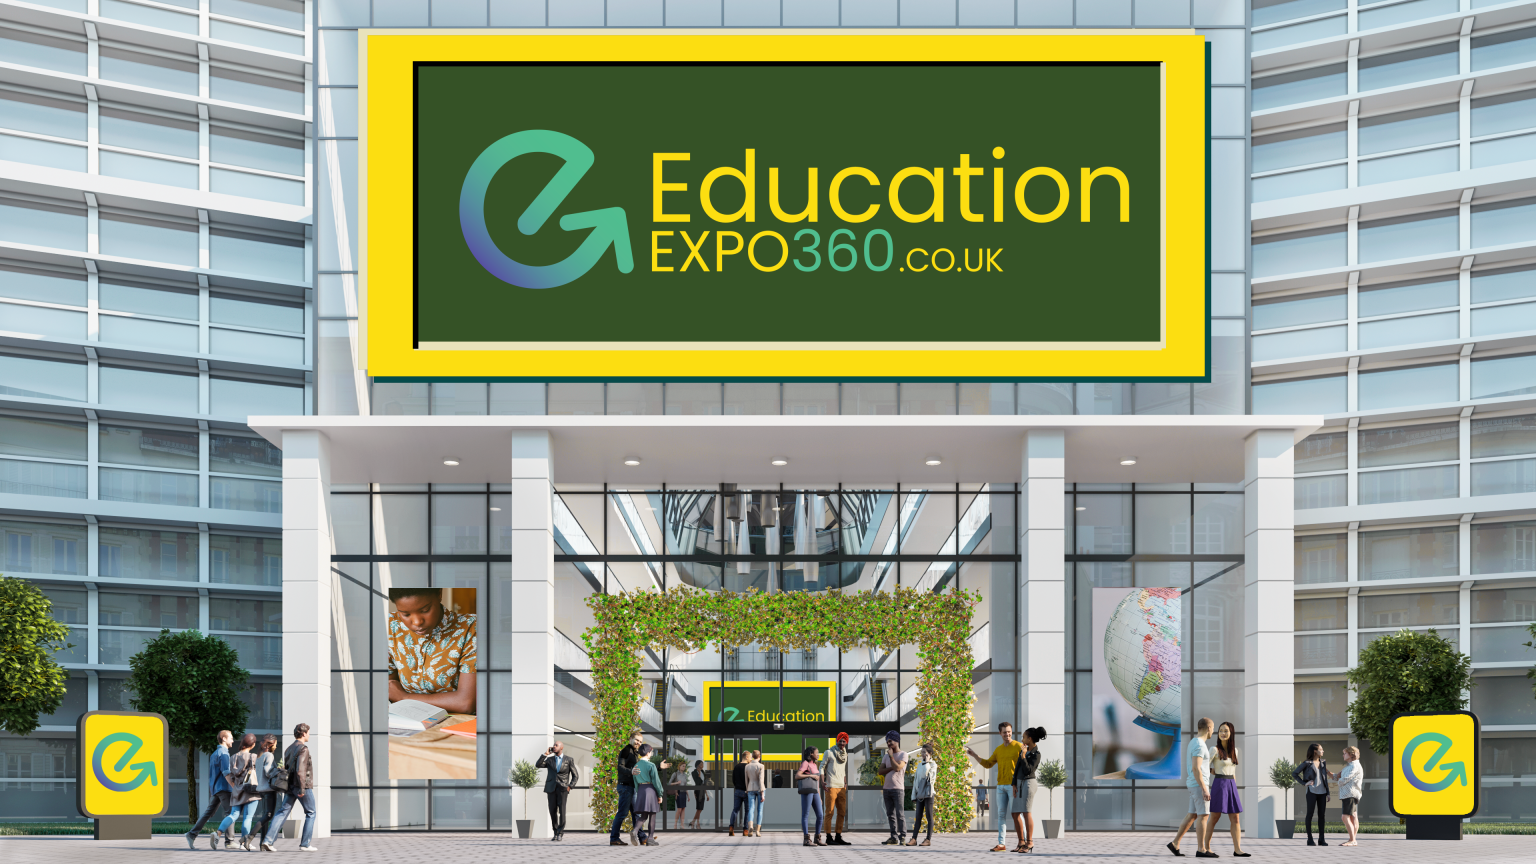 Education Expo 360 UK